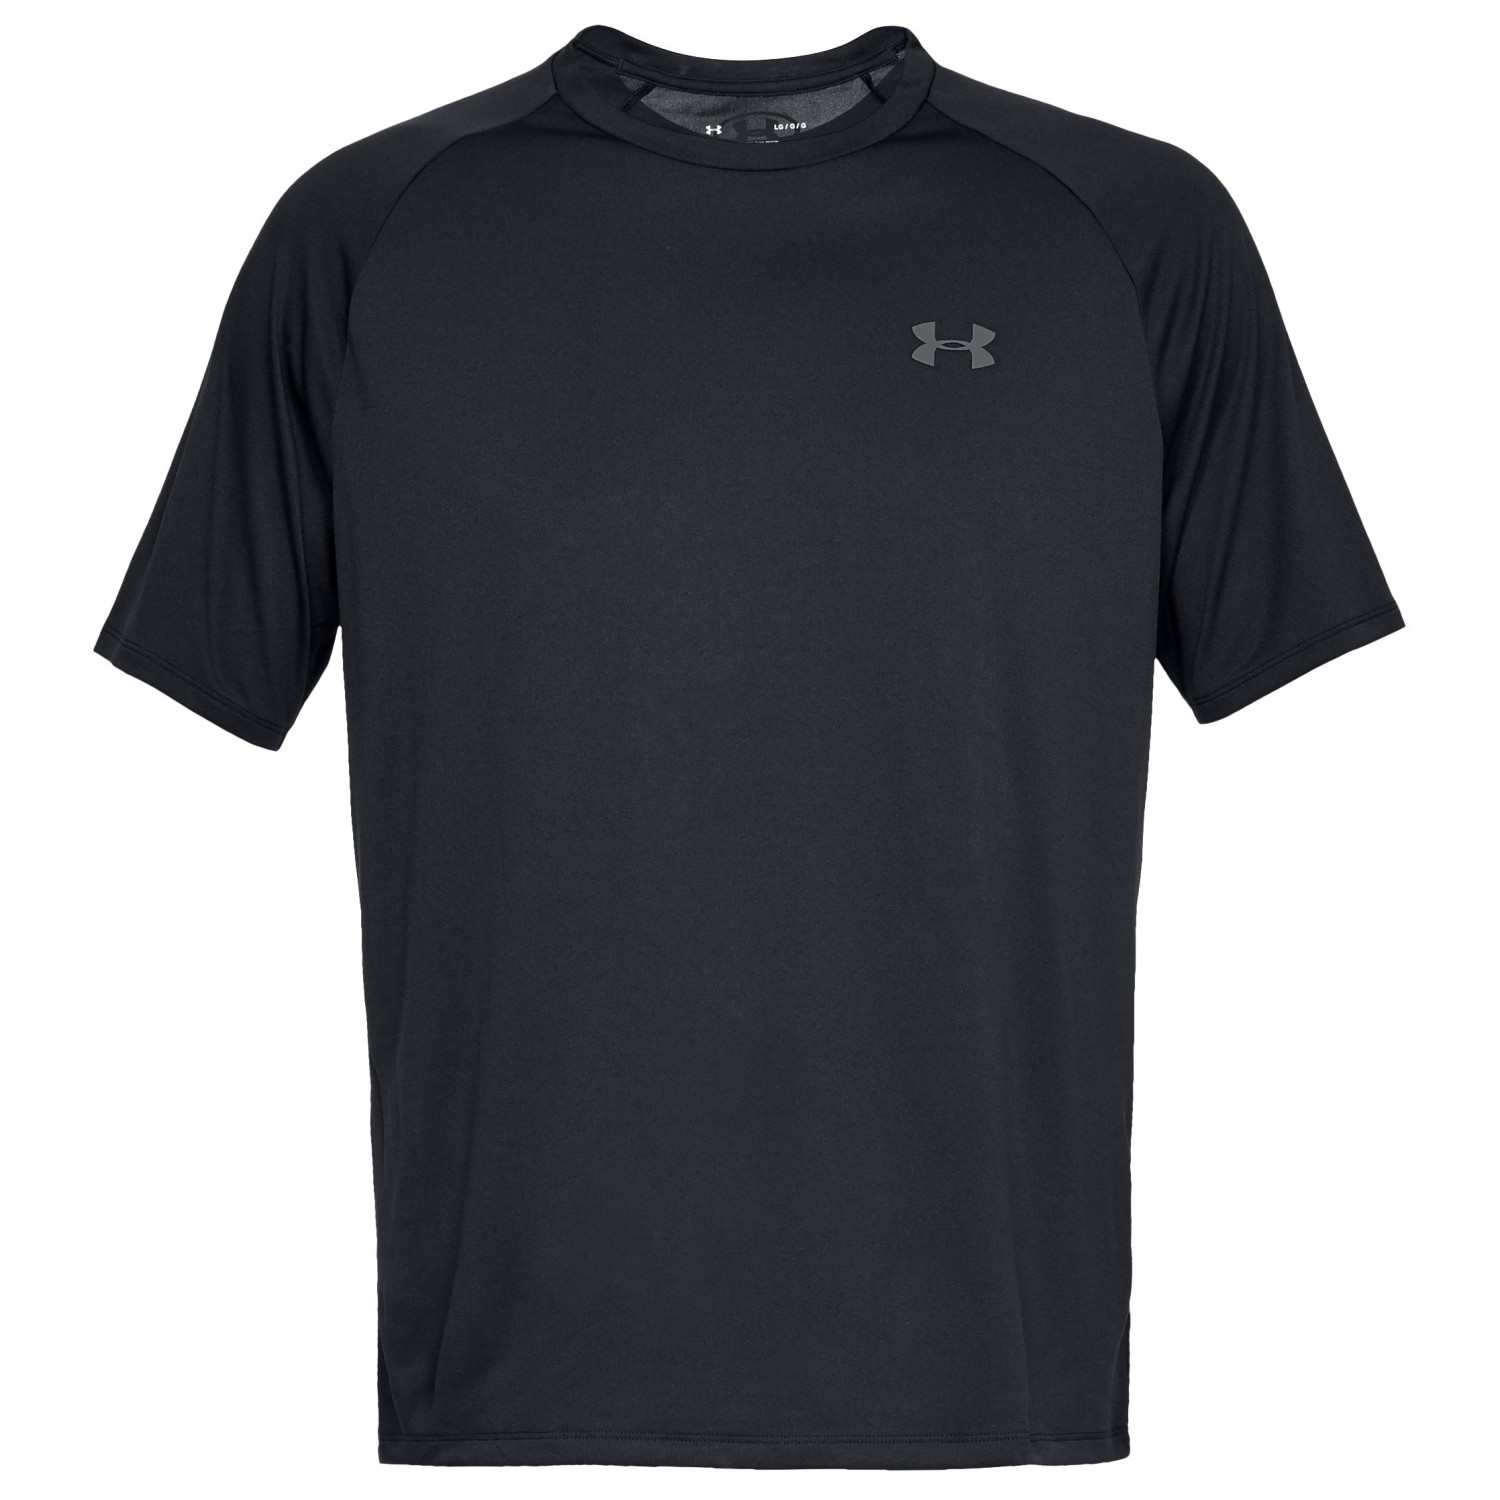 Функциональная рубашка Under Armour UA Tech S/S Tee, черный футболка under armour ua tech 2 0 цвет neo turquoise black